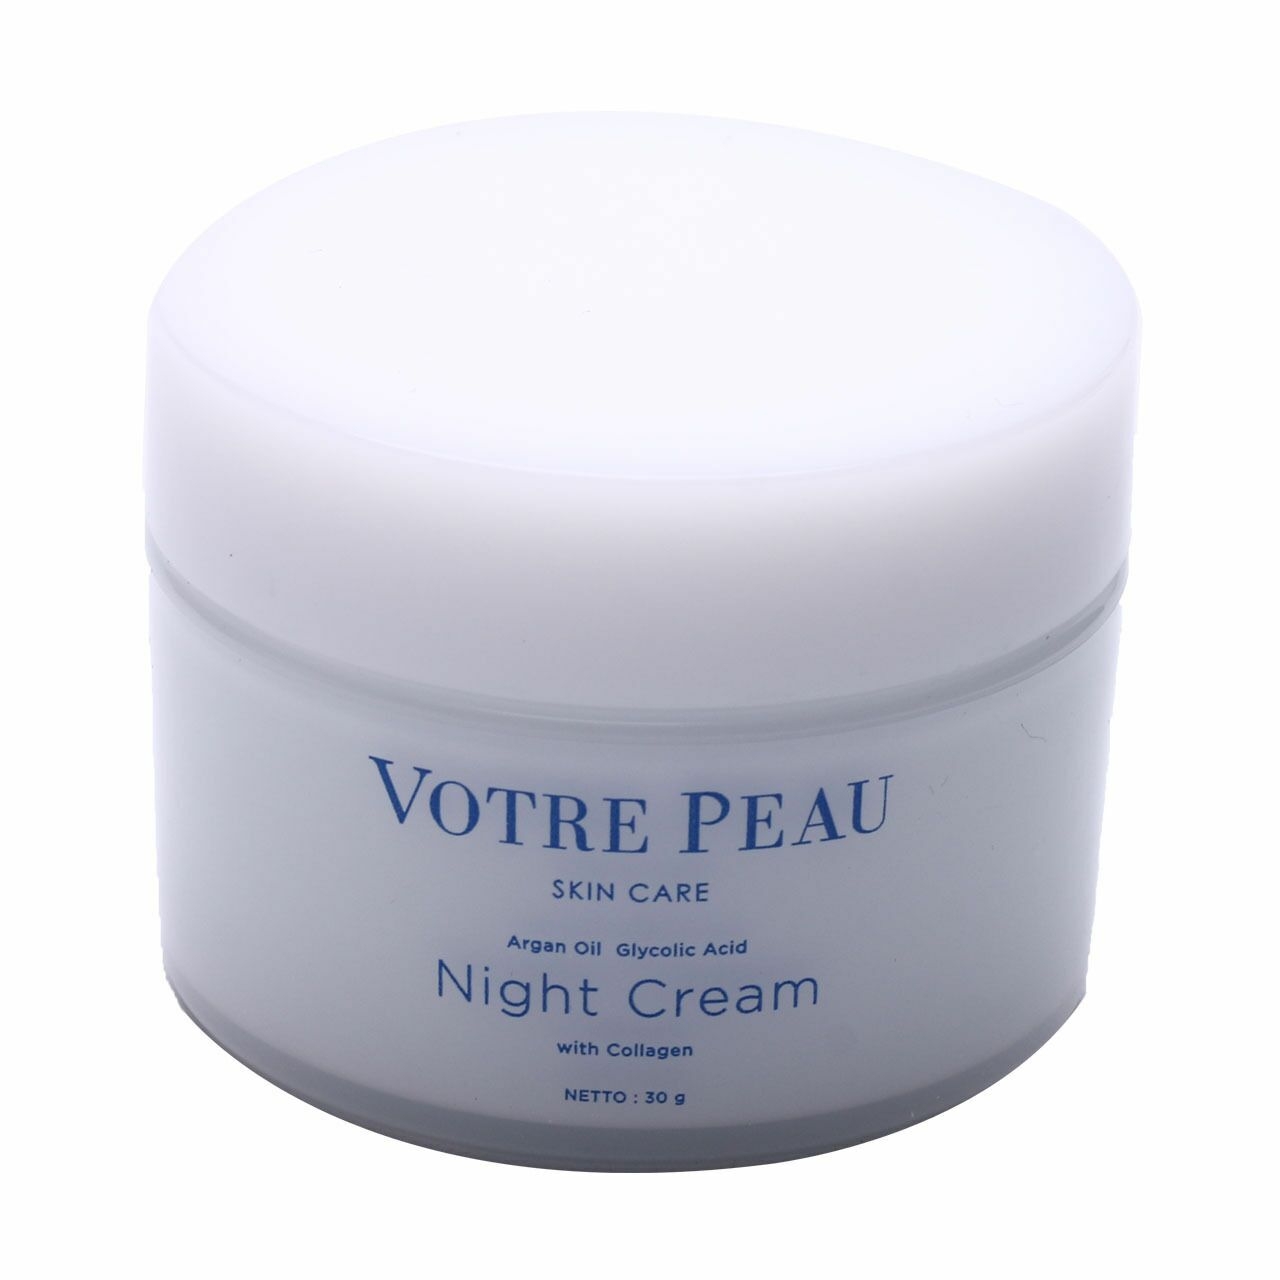 Votre Peau Night Cream Skin Care